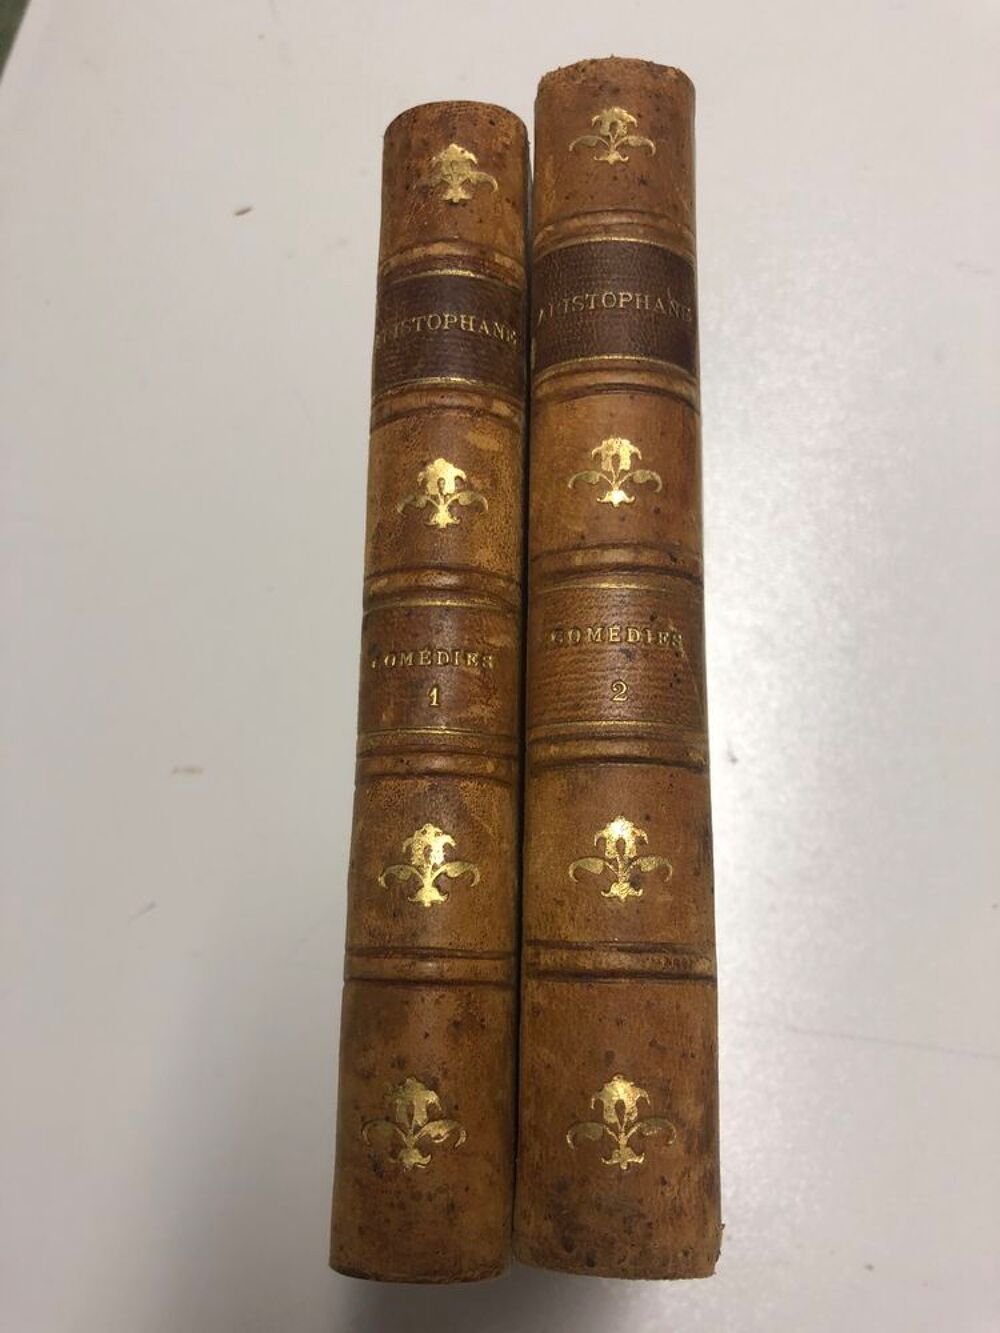 Oeuvres de Voltaire Livres et BD